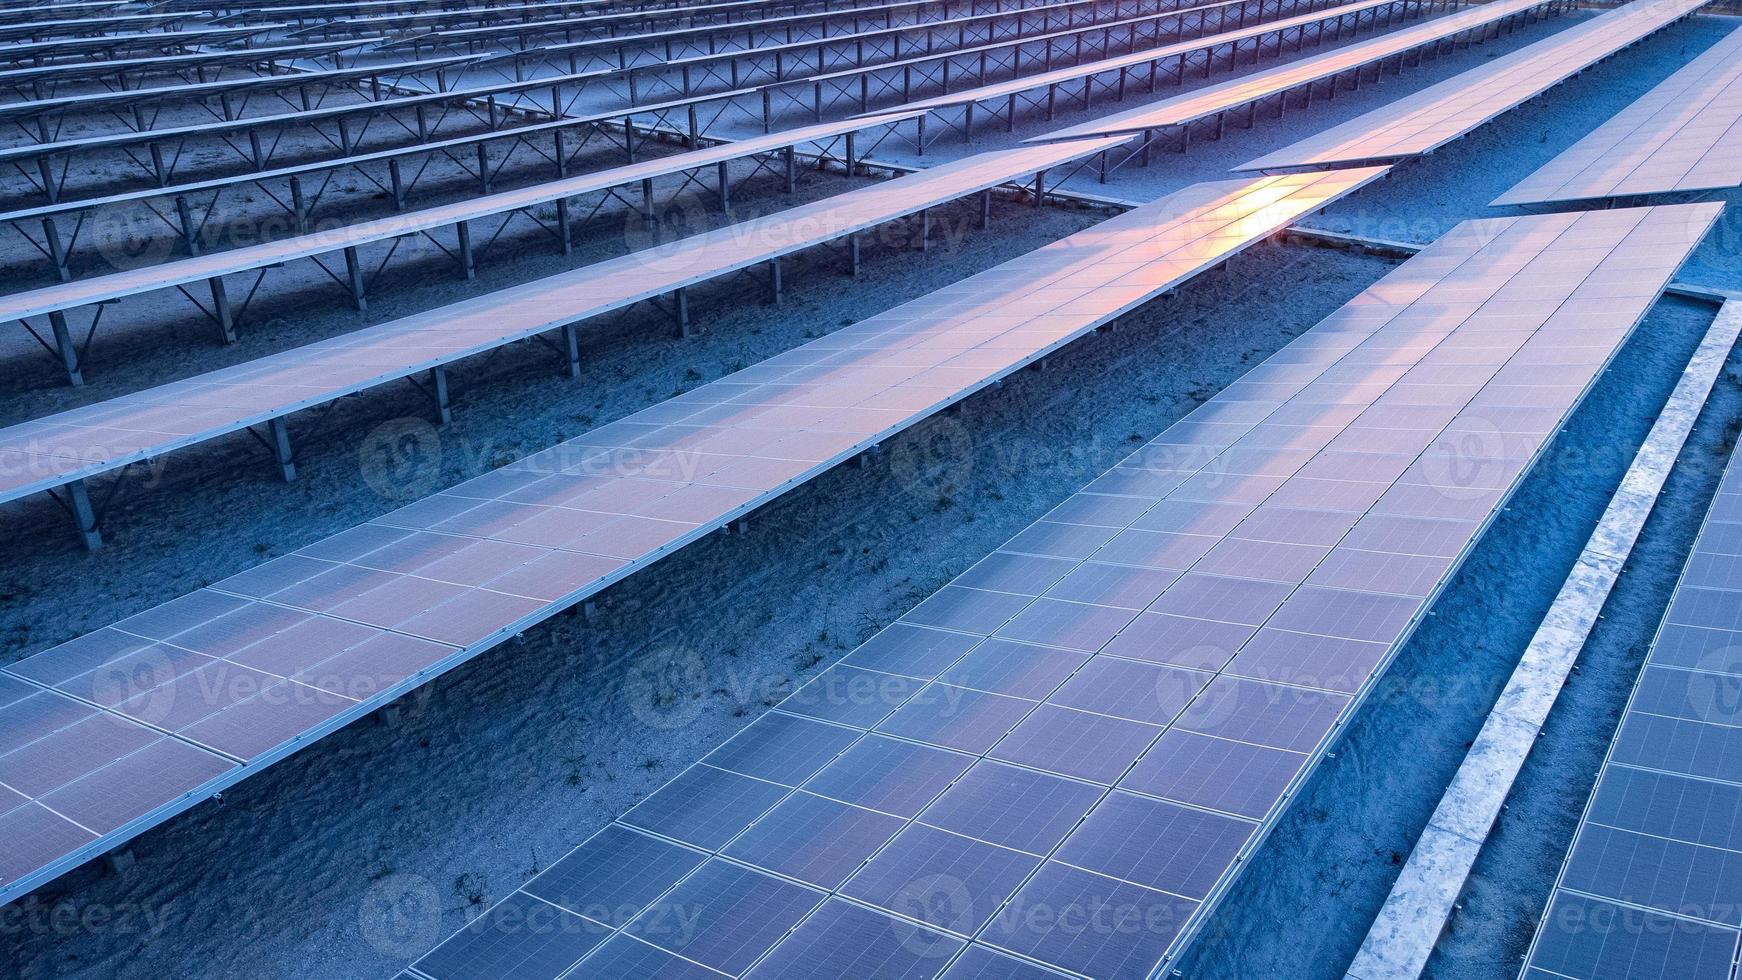 vista superior de los paneles solares celda solar en la granja solar y la iluminación solar se refleja con espacio de copia. campo de la planta de energía fotovoltaica para la generación de energía. concepto de calentamiento global y cambio climático. foto